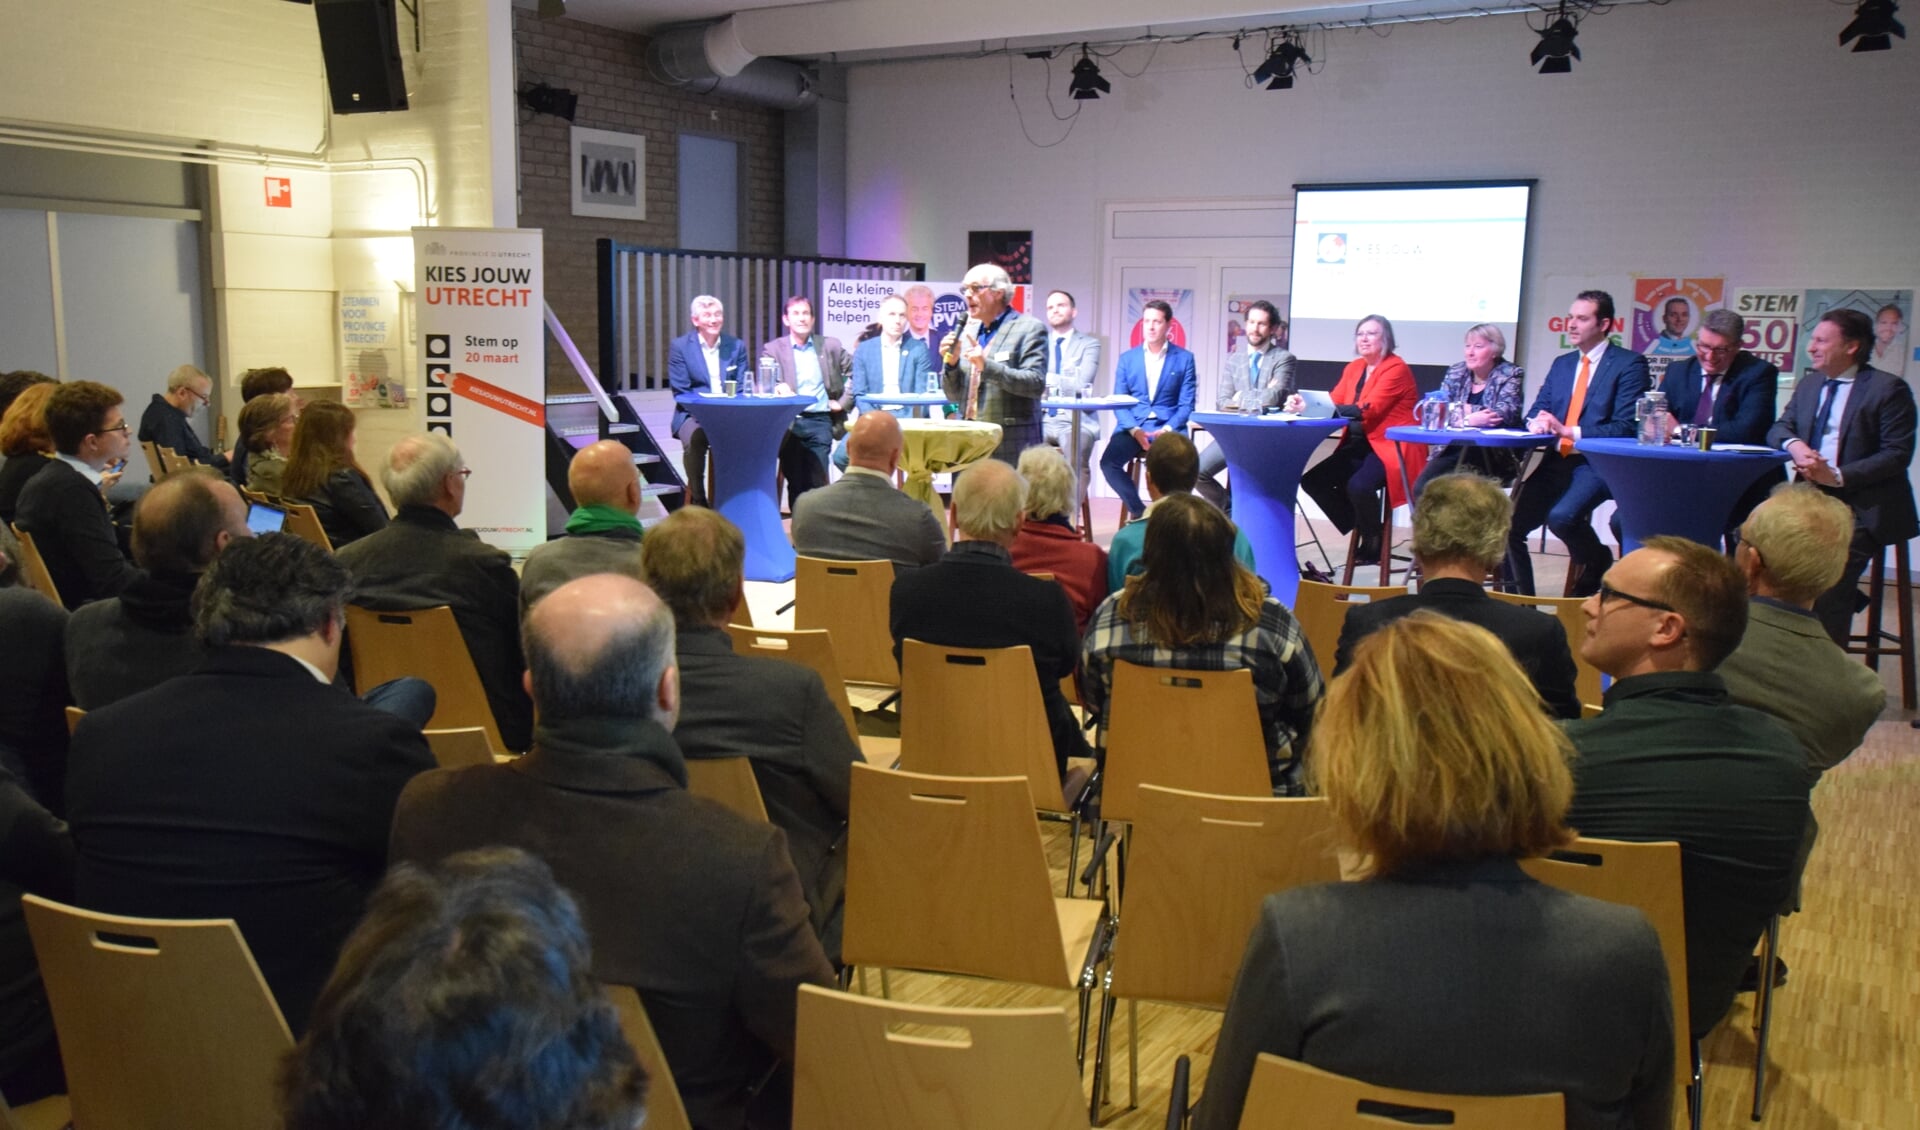 Woensdag 6 februari organiseerden politieke partijen uit De Bilt gezamenlijk een provinciaal verkiezingsdebat in De Vierstee in Maartensdijk. Voor veel geïnteresseerden een goede gelegenheid kennis te maken met lijsttrekkers en de standpunten van hun partij..